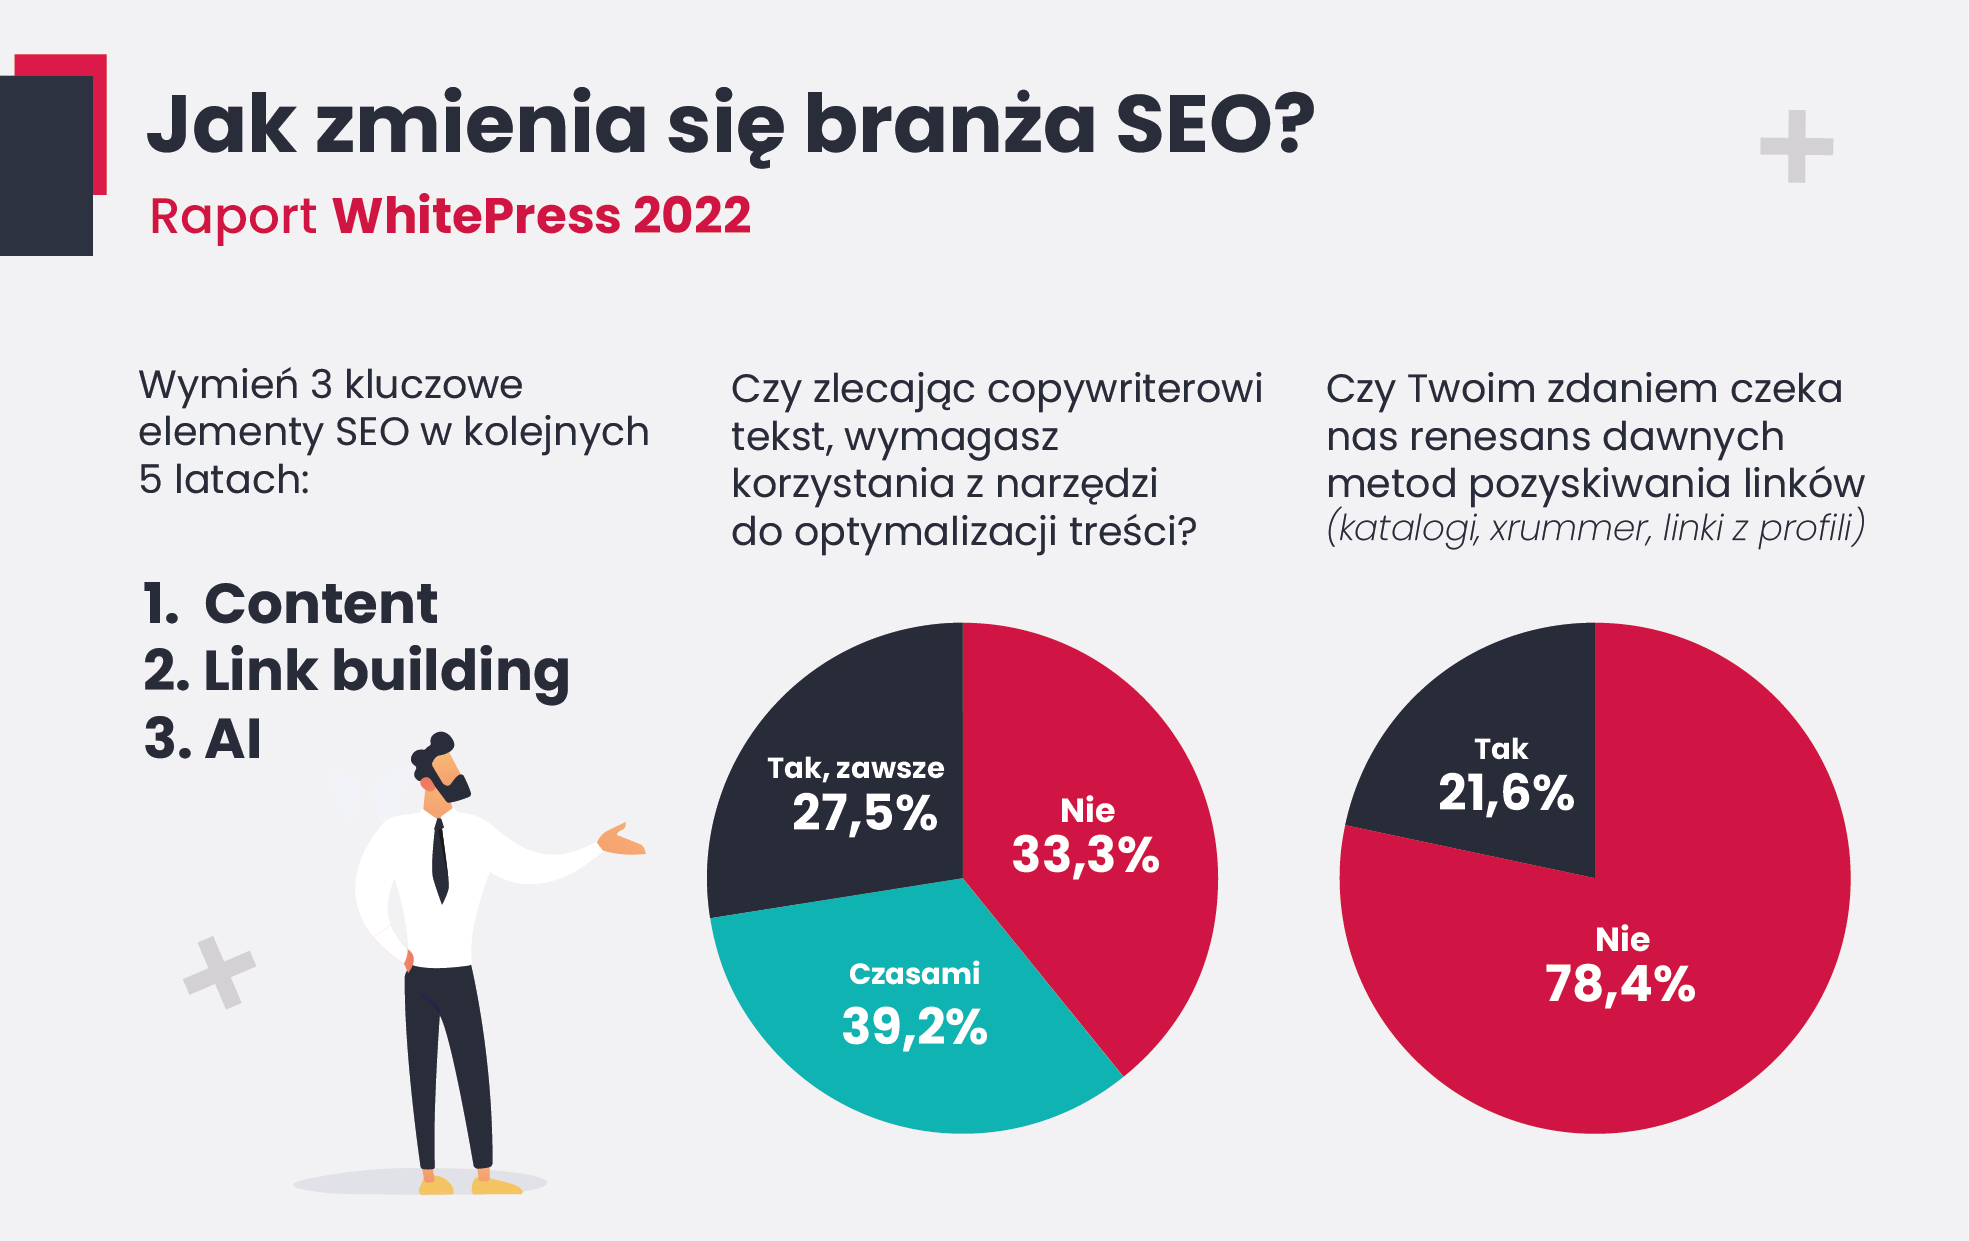 3 kluczowe elementy SEO w 2022 Badania raport whitepress 2022 jak zmienia sie branza seo